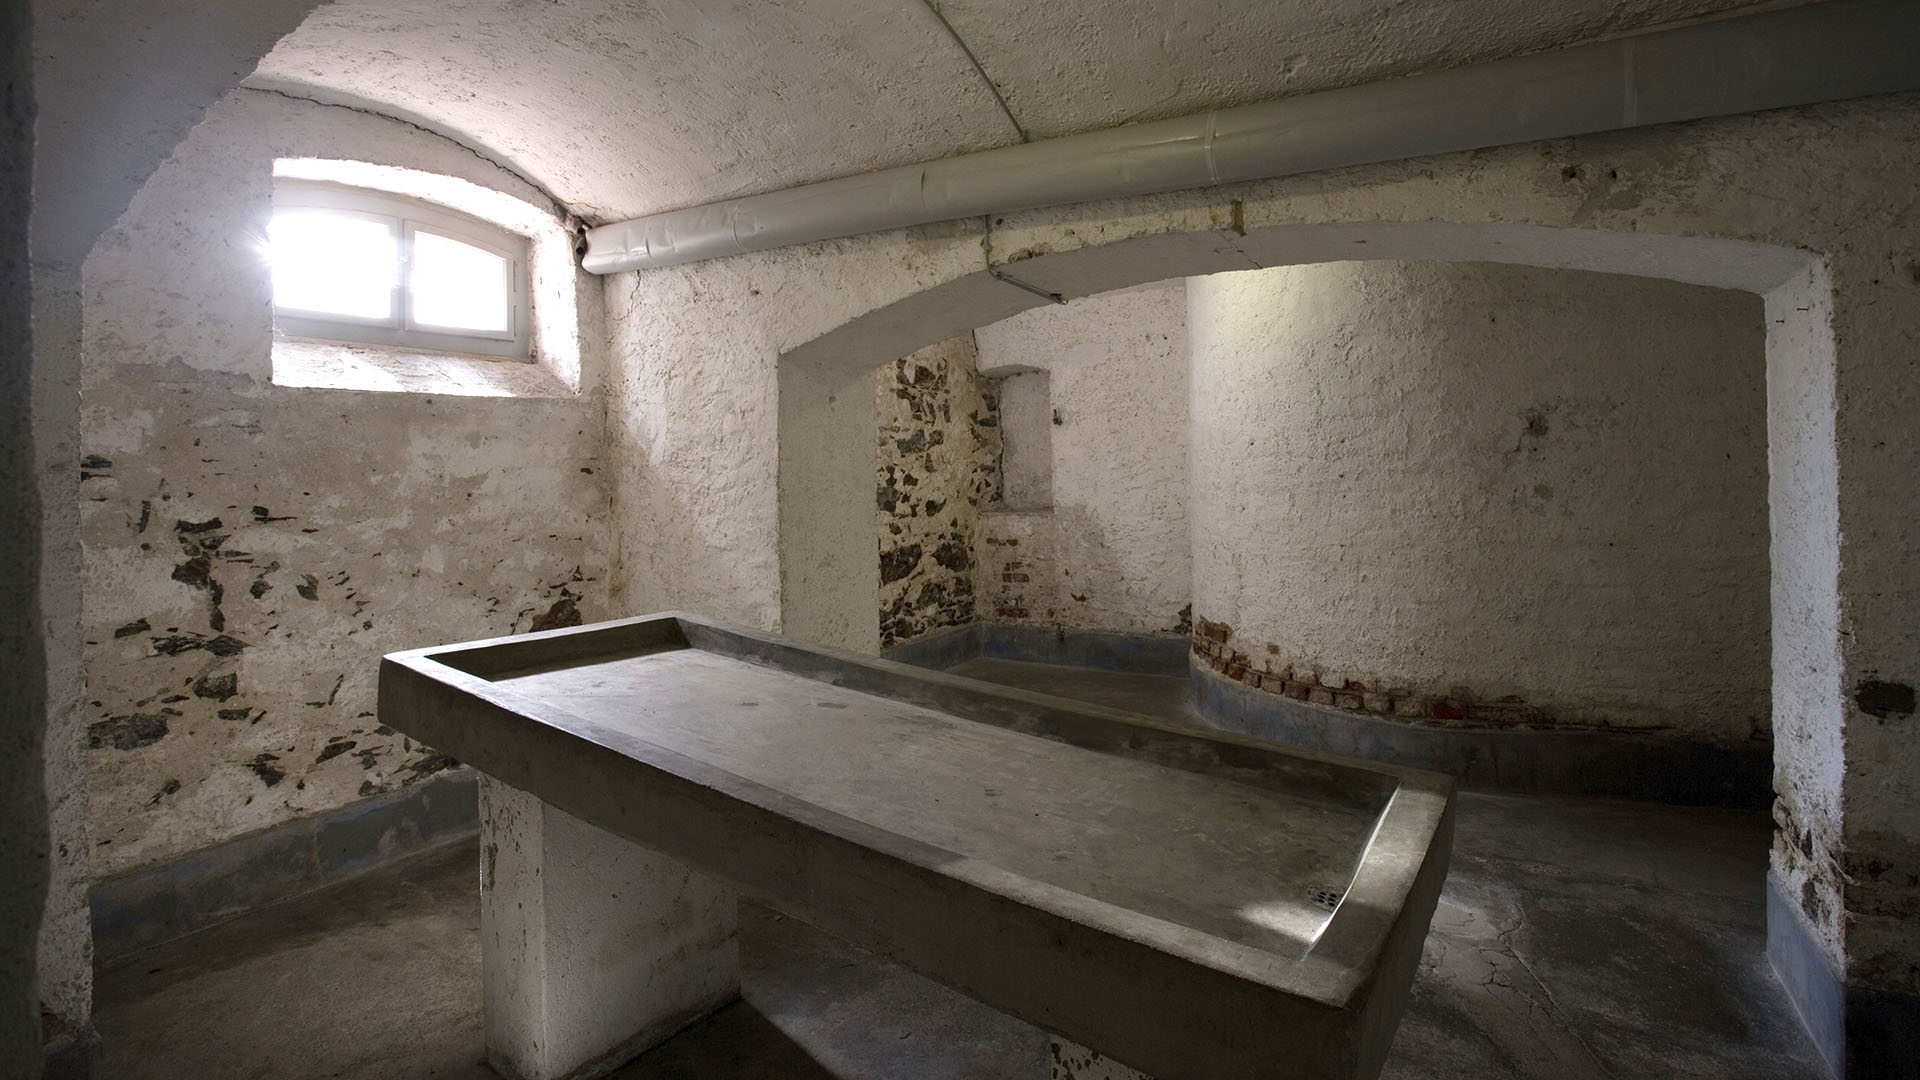 Una habitación en el centro de Hadamar, Alemania, donde se hicieron experimentos con humanos durante el nazismo (Thomas Frey/imageBROKER/Shutterstock)